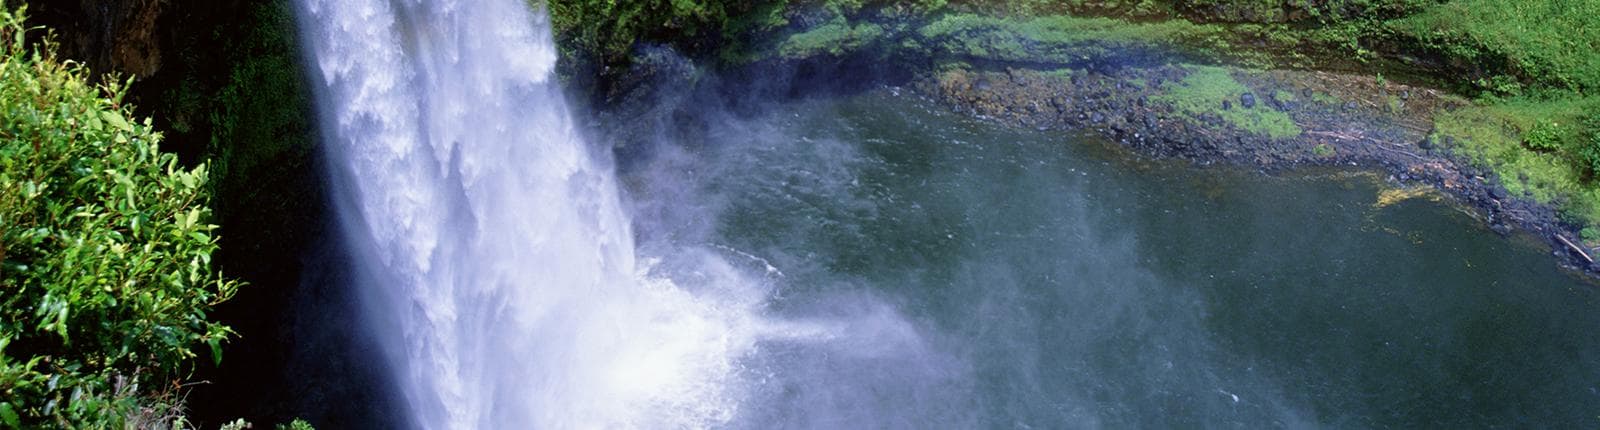 A waterfall flowing in the Wailua River in Kauai, Hawaii